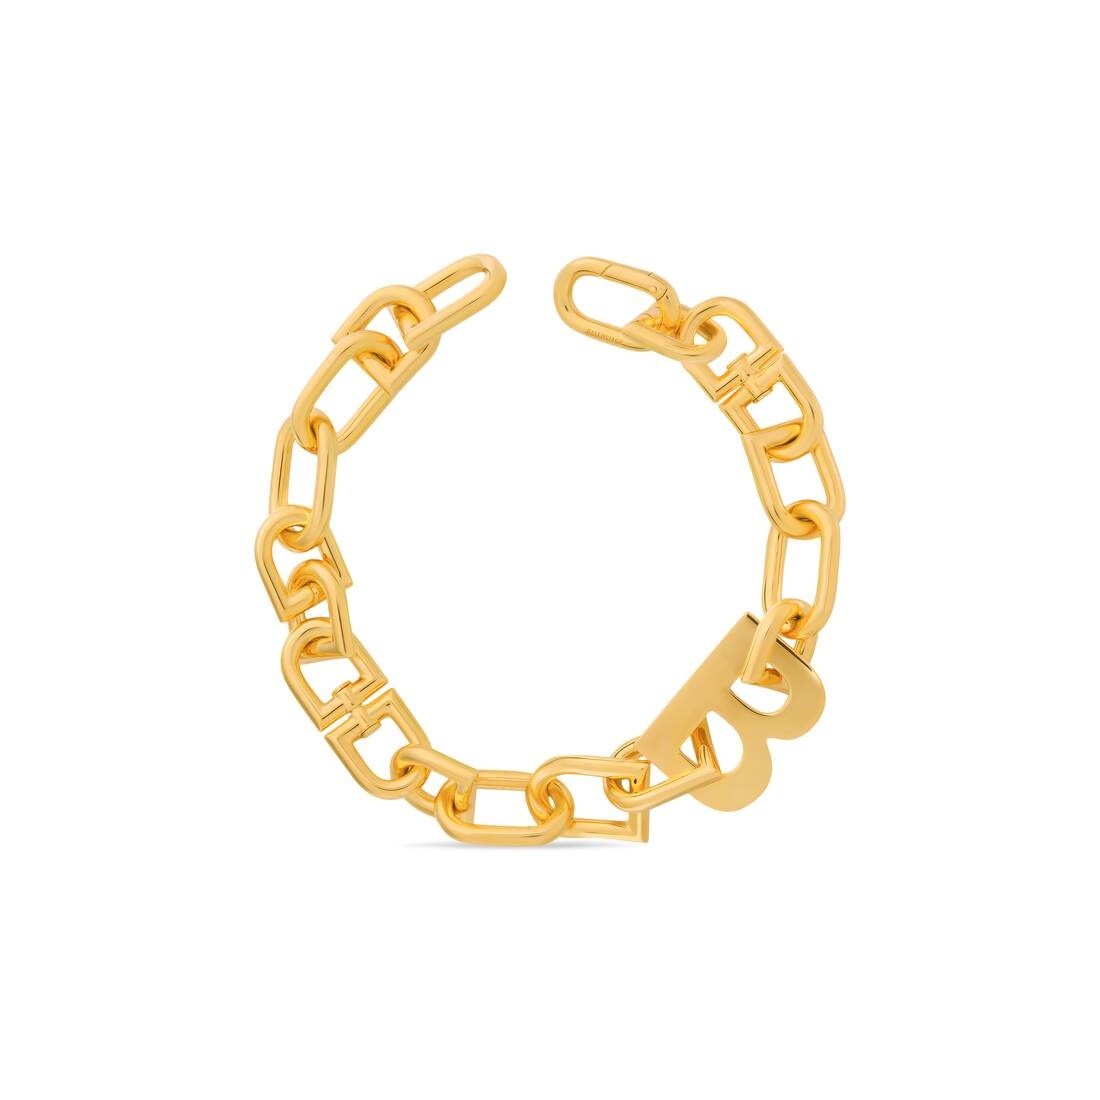 b chain xxl necklace - 2